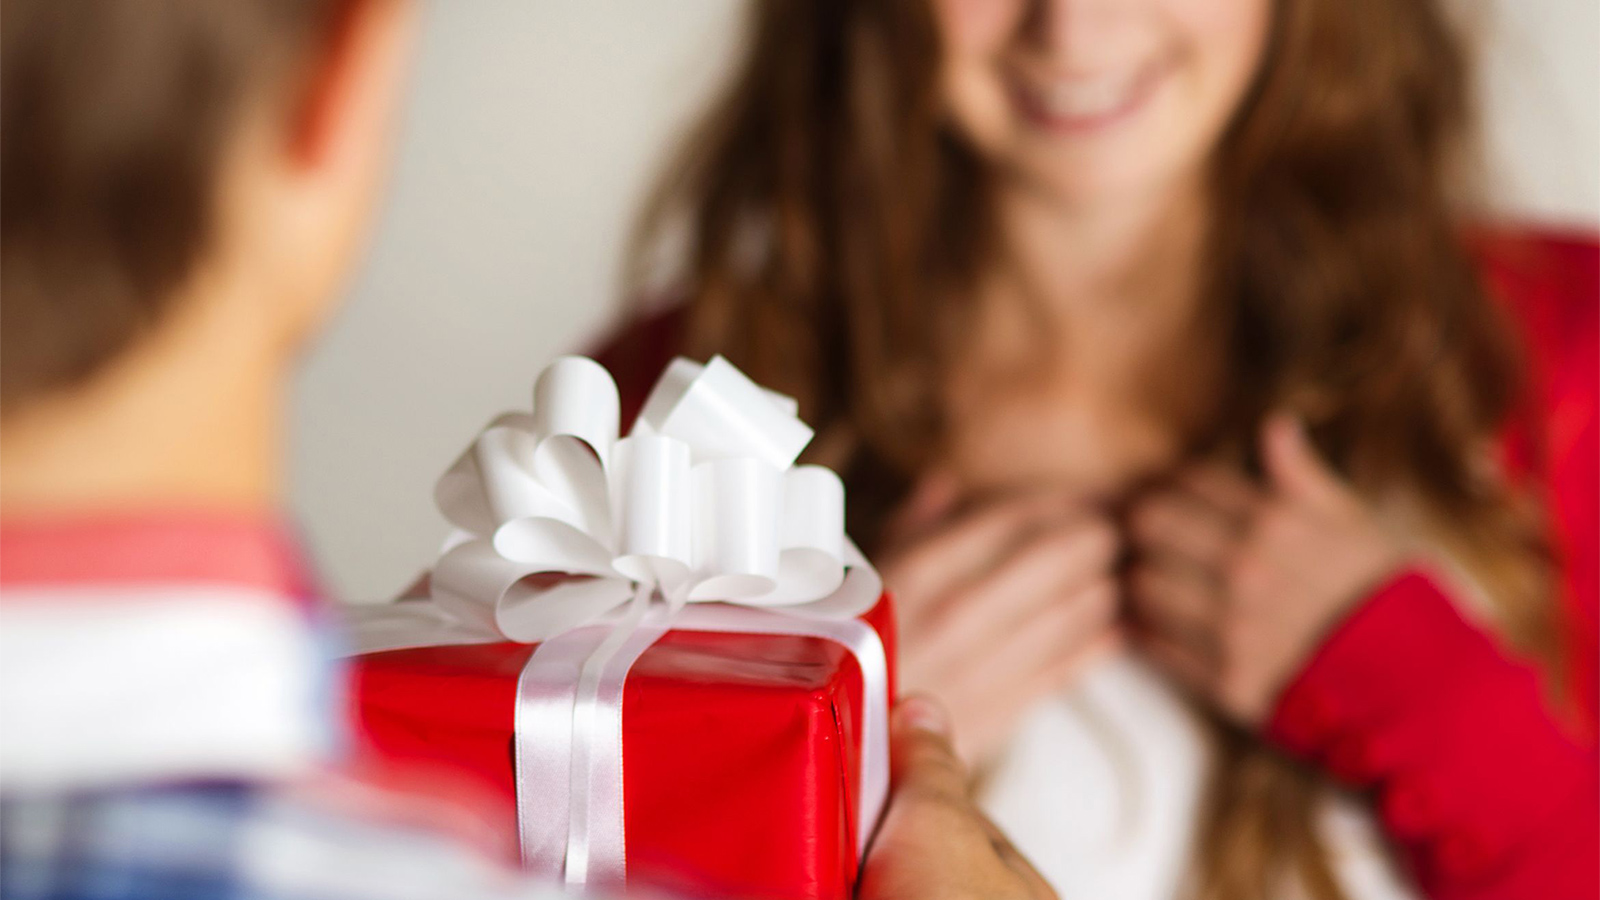 ‪الهدايا تقدم بالمنزل وقيمتها تحدد حسب العلاقة التي تربط الطرفين ببعضهما‬ (وكالات)